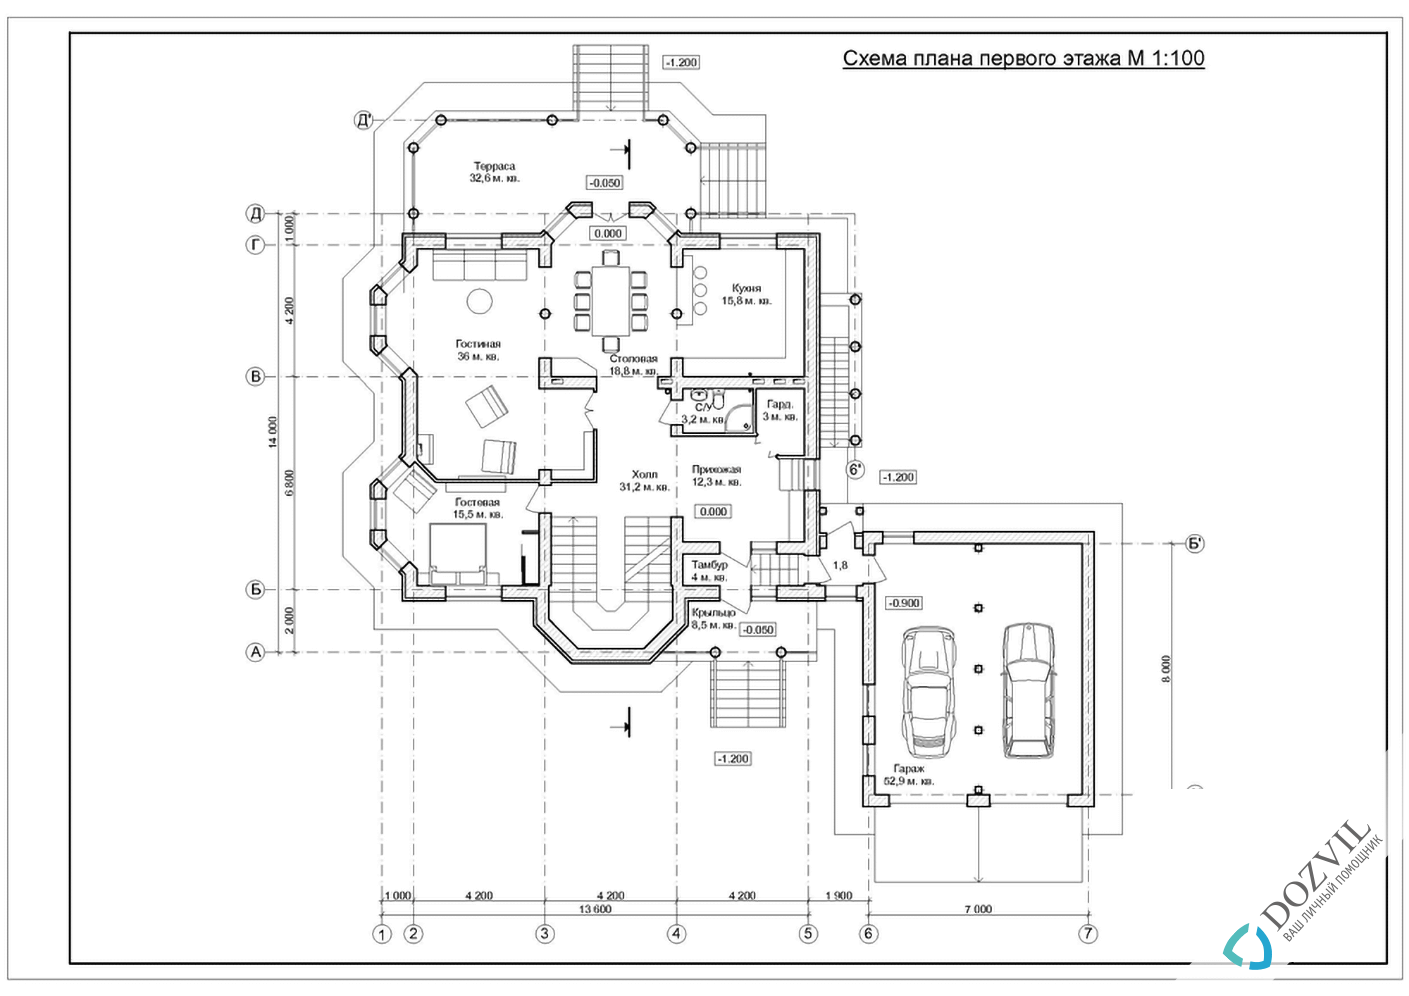 Узаконить реконструкцию> Реконструкция дома с общей площадью до 500 квадратных метров > 2 этап - Разработка эскиза намерений строительства